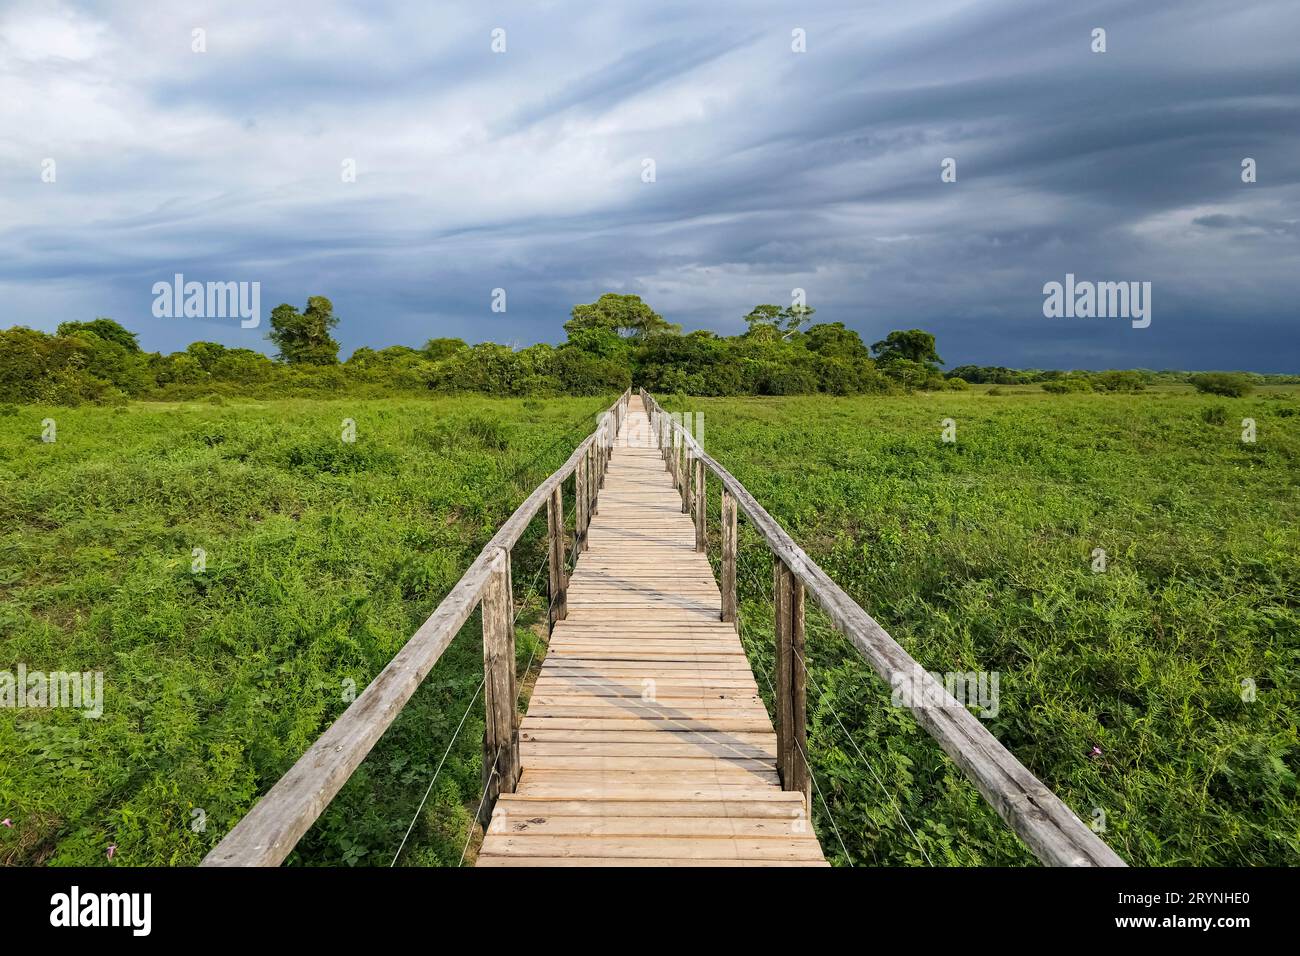 Passerella in legno sulla zona paludosa che conduce all'orizzonte, Pantanal Wetlands, Mato Grosso, Brasile Foto Stock